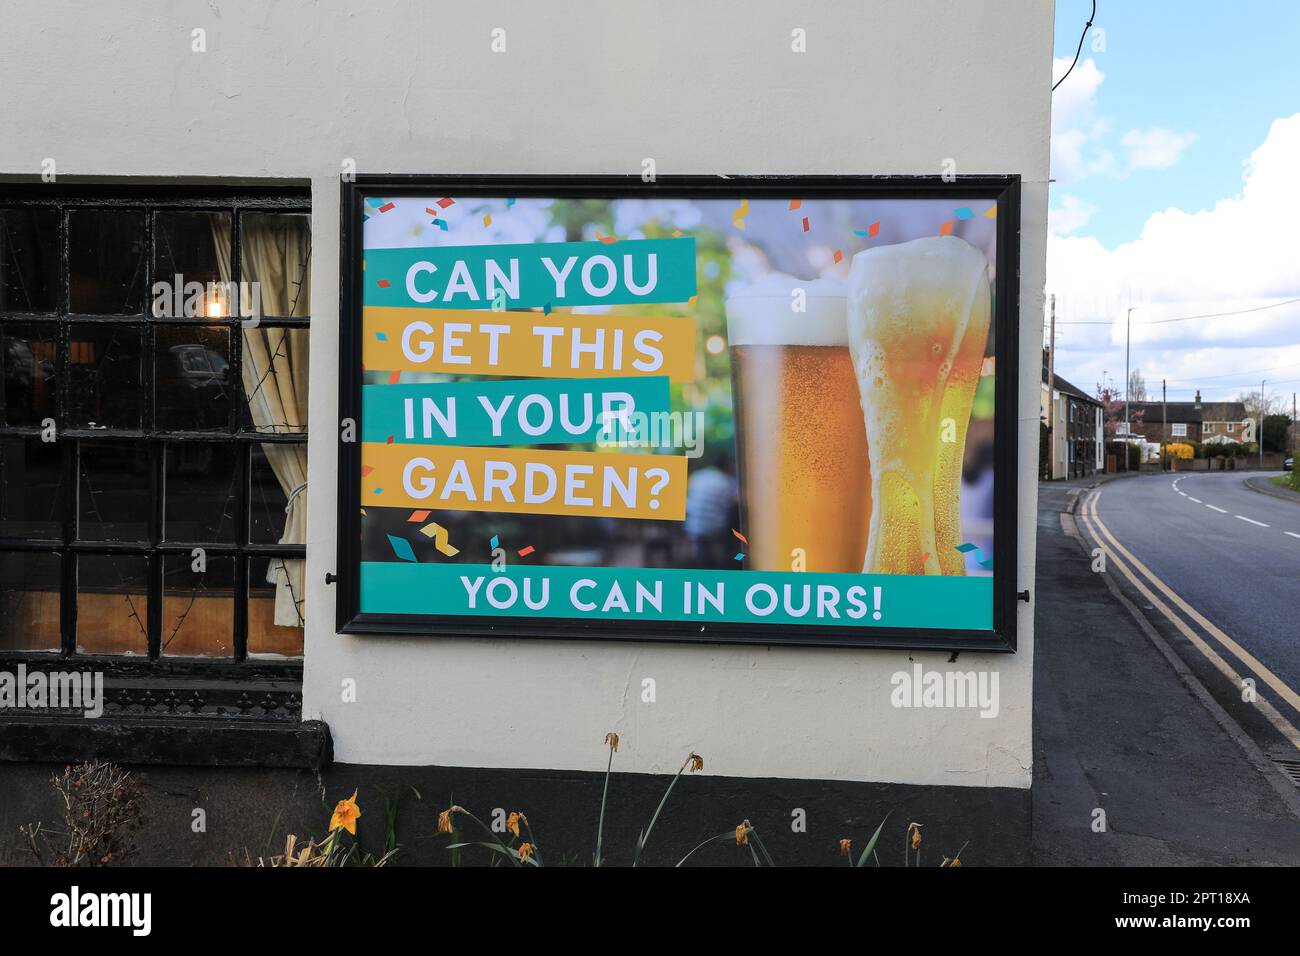 Un cartello che fa pubblicità a un giardino all'aperto di un pub britannico o di una casa pubblica che dice "si può ottenere questo nel vostro giardino - si può nel nostro!", Inghilterra, Regno Unito Foto Stock